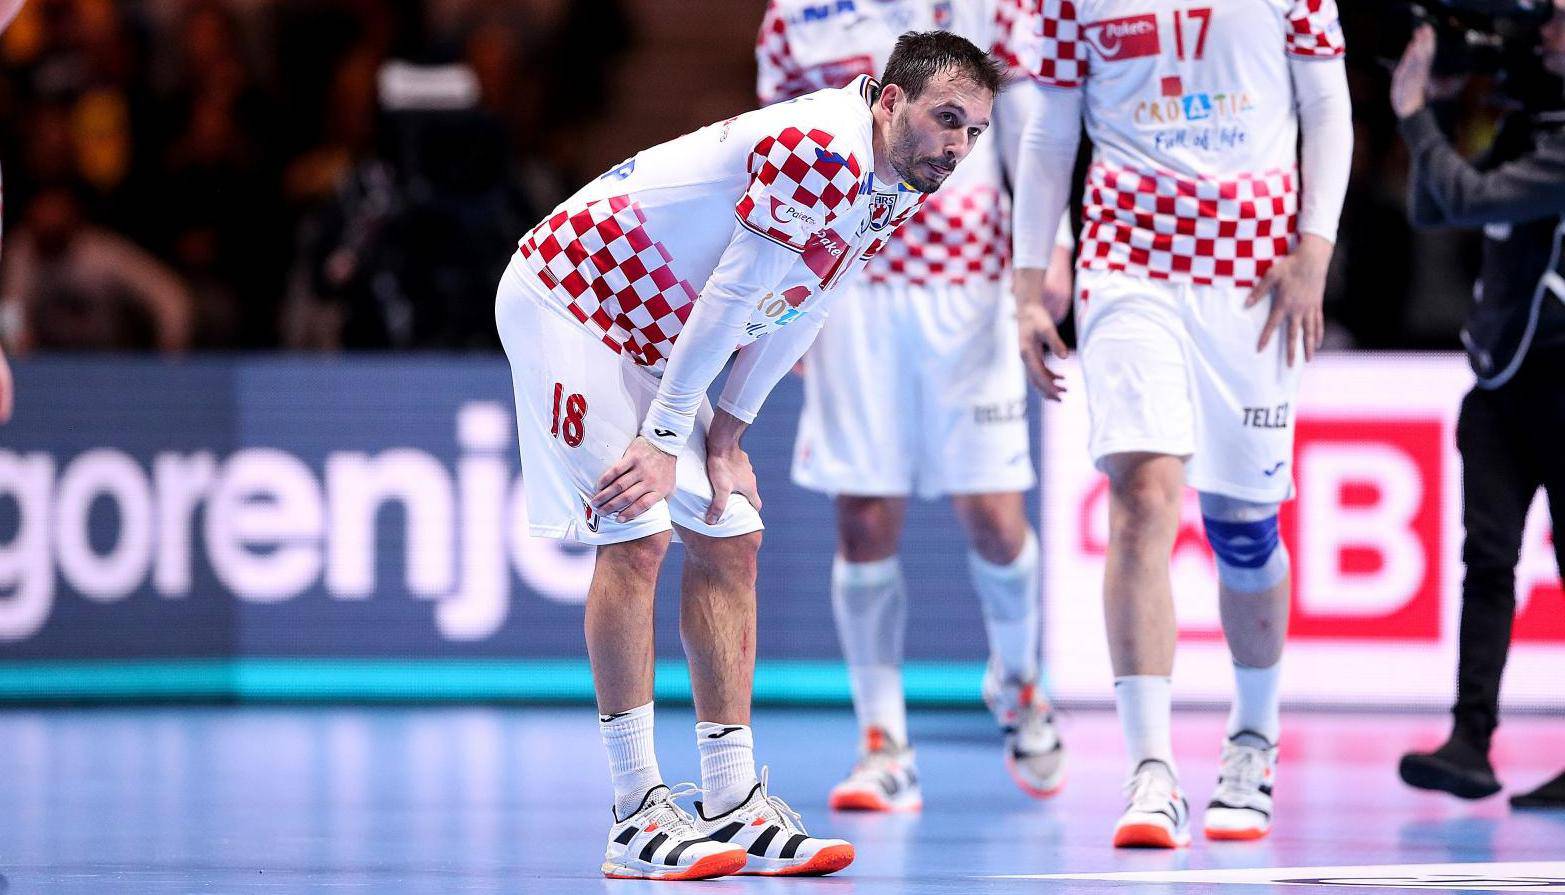 Stockholm: Tuga rukometaša Hrvatske nakon izgubljene utakmice u finalu rukometnog EP